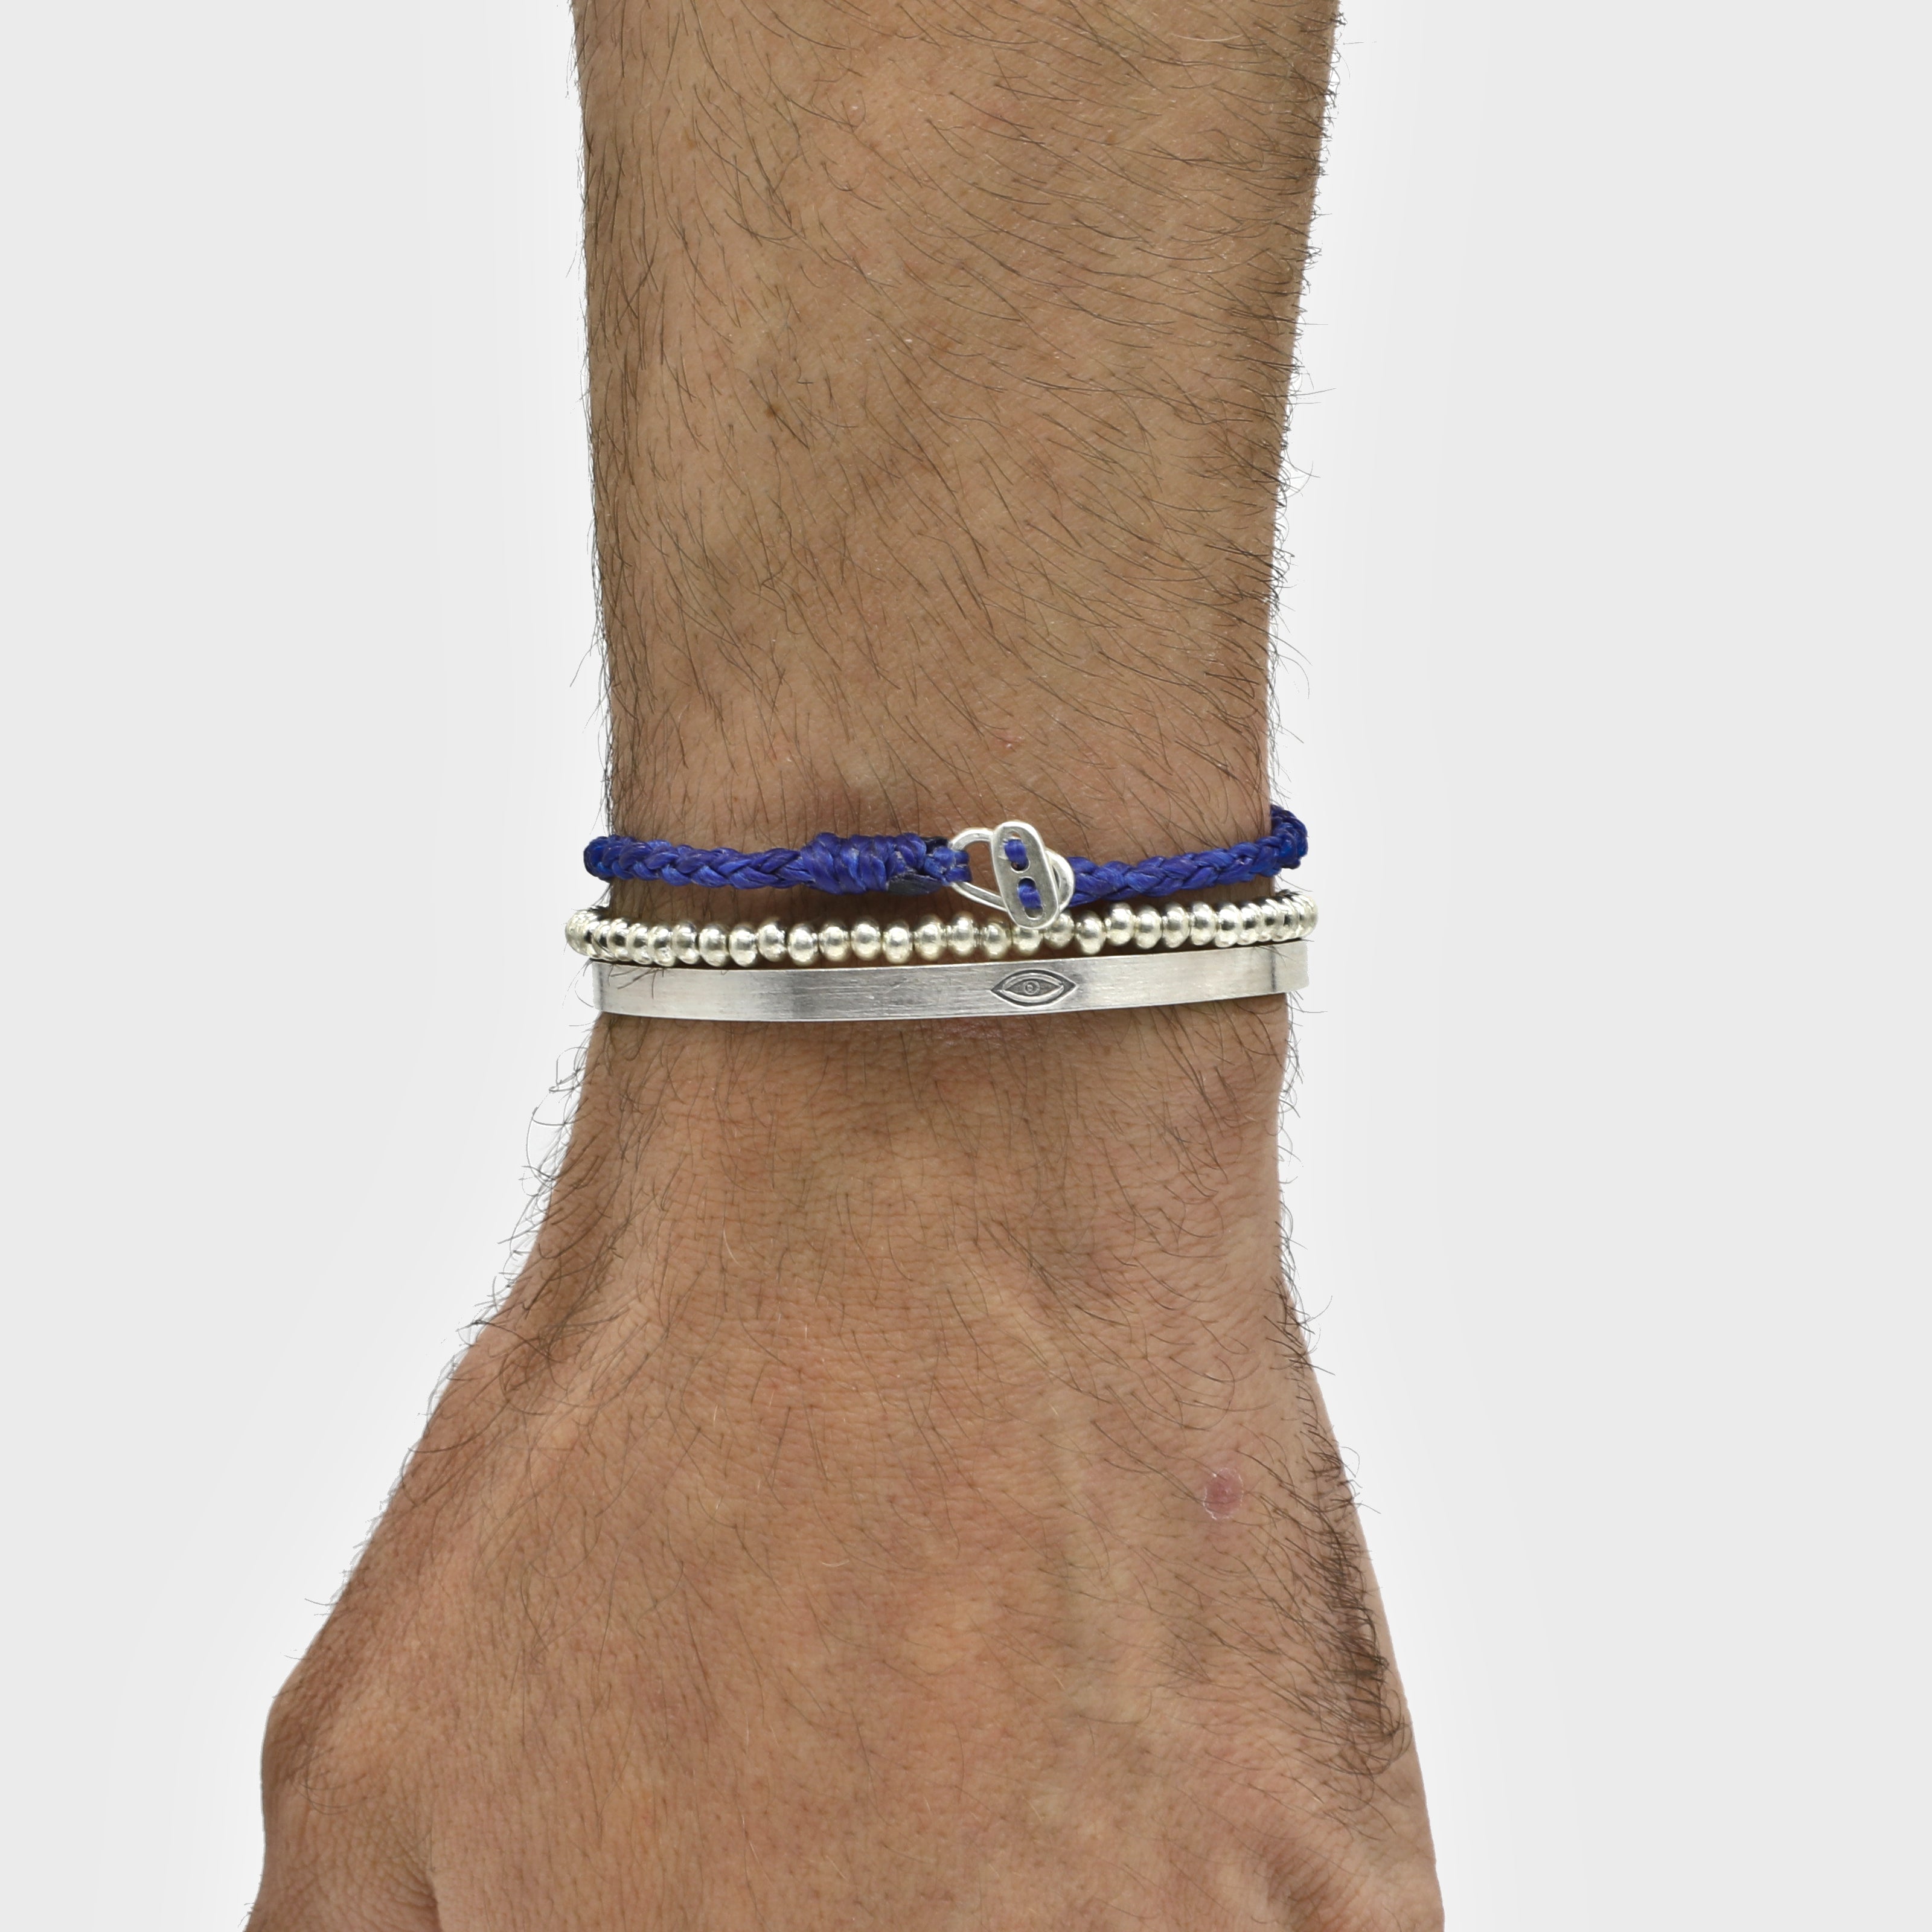 4mm Braided Bracelet With Sterling Silver Clasp (Blue)-Bracelet-Kompsós